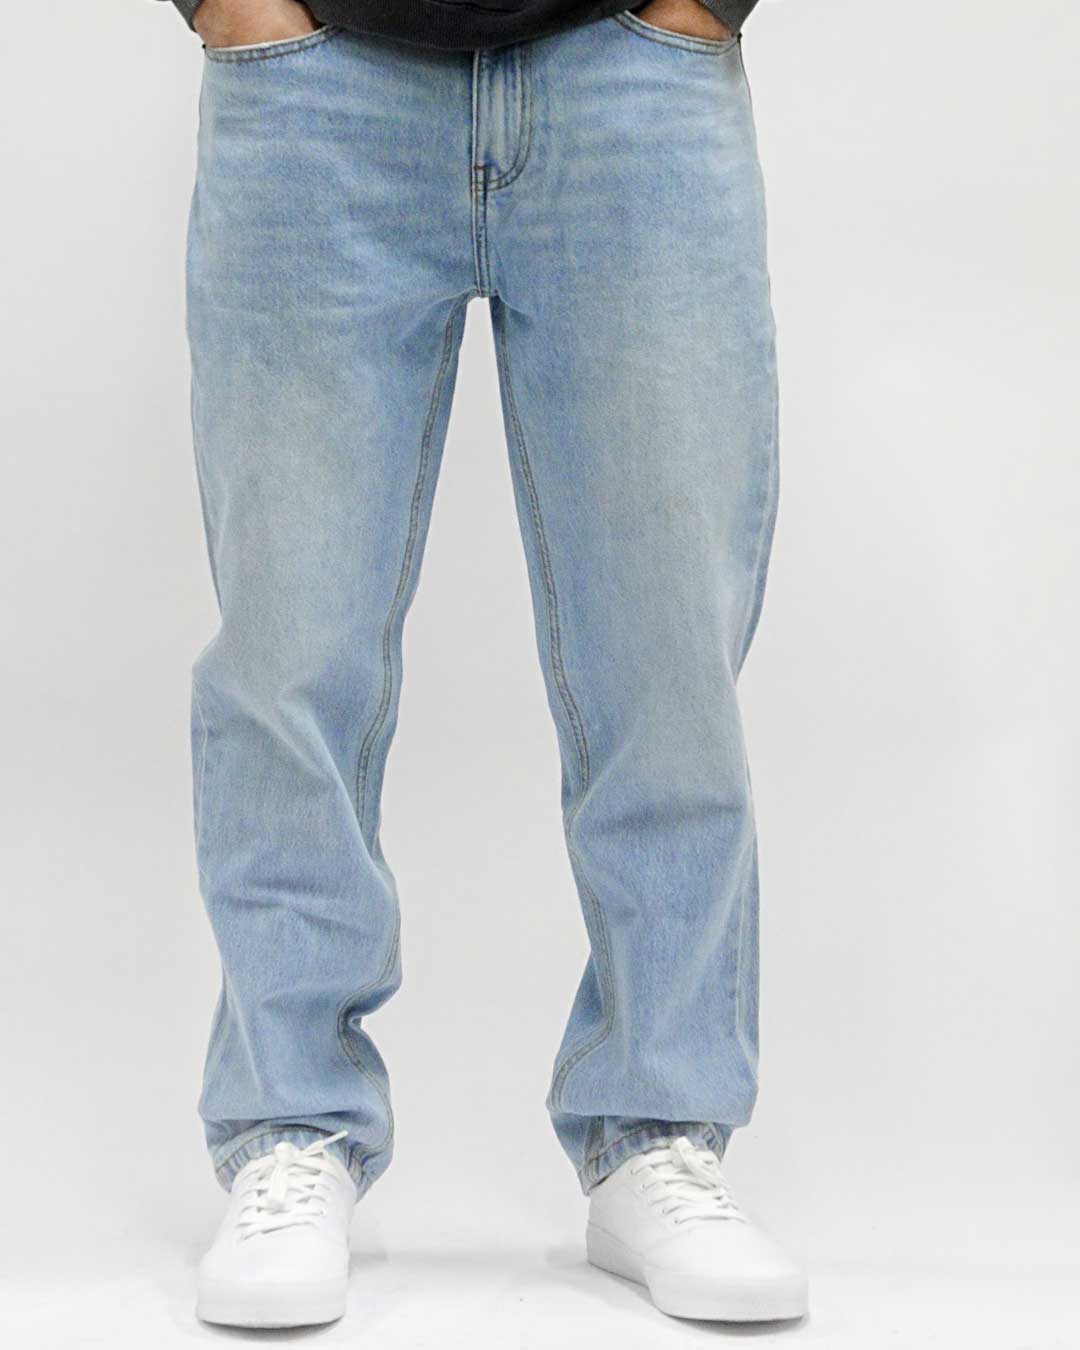 Défier Clothing Comfort Denim Pants Karottenschnitt Karottenhose Stone Washed Jeans 